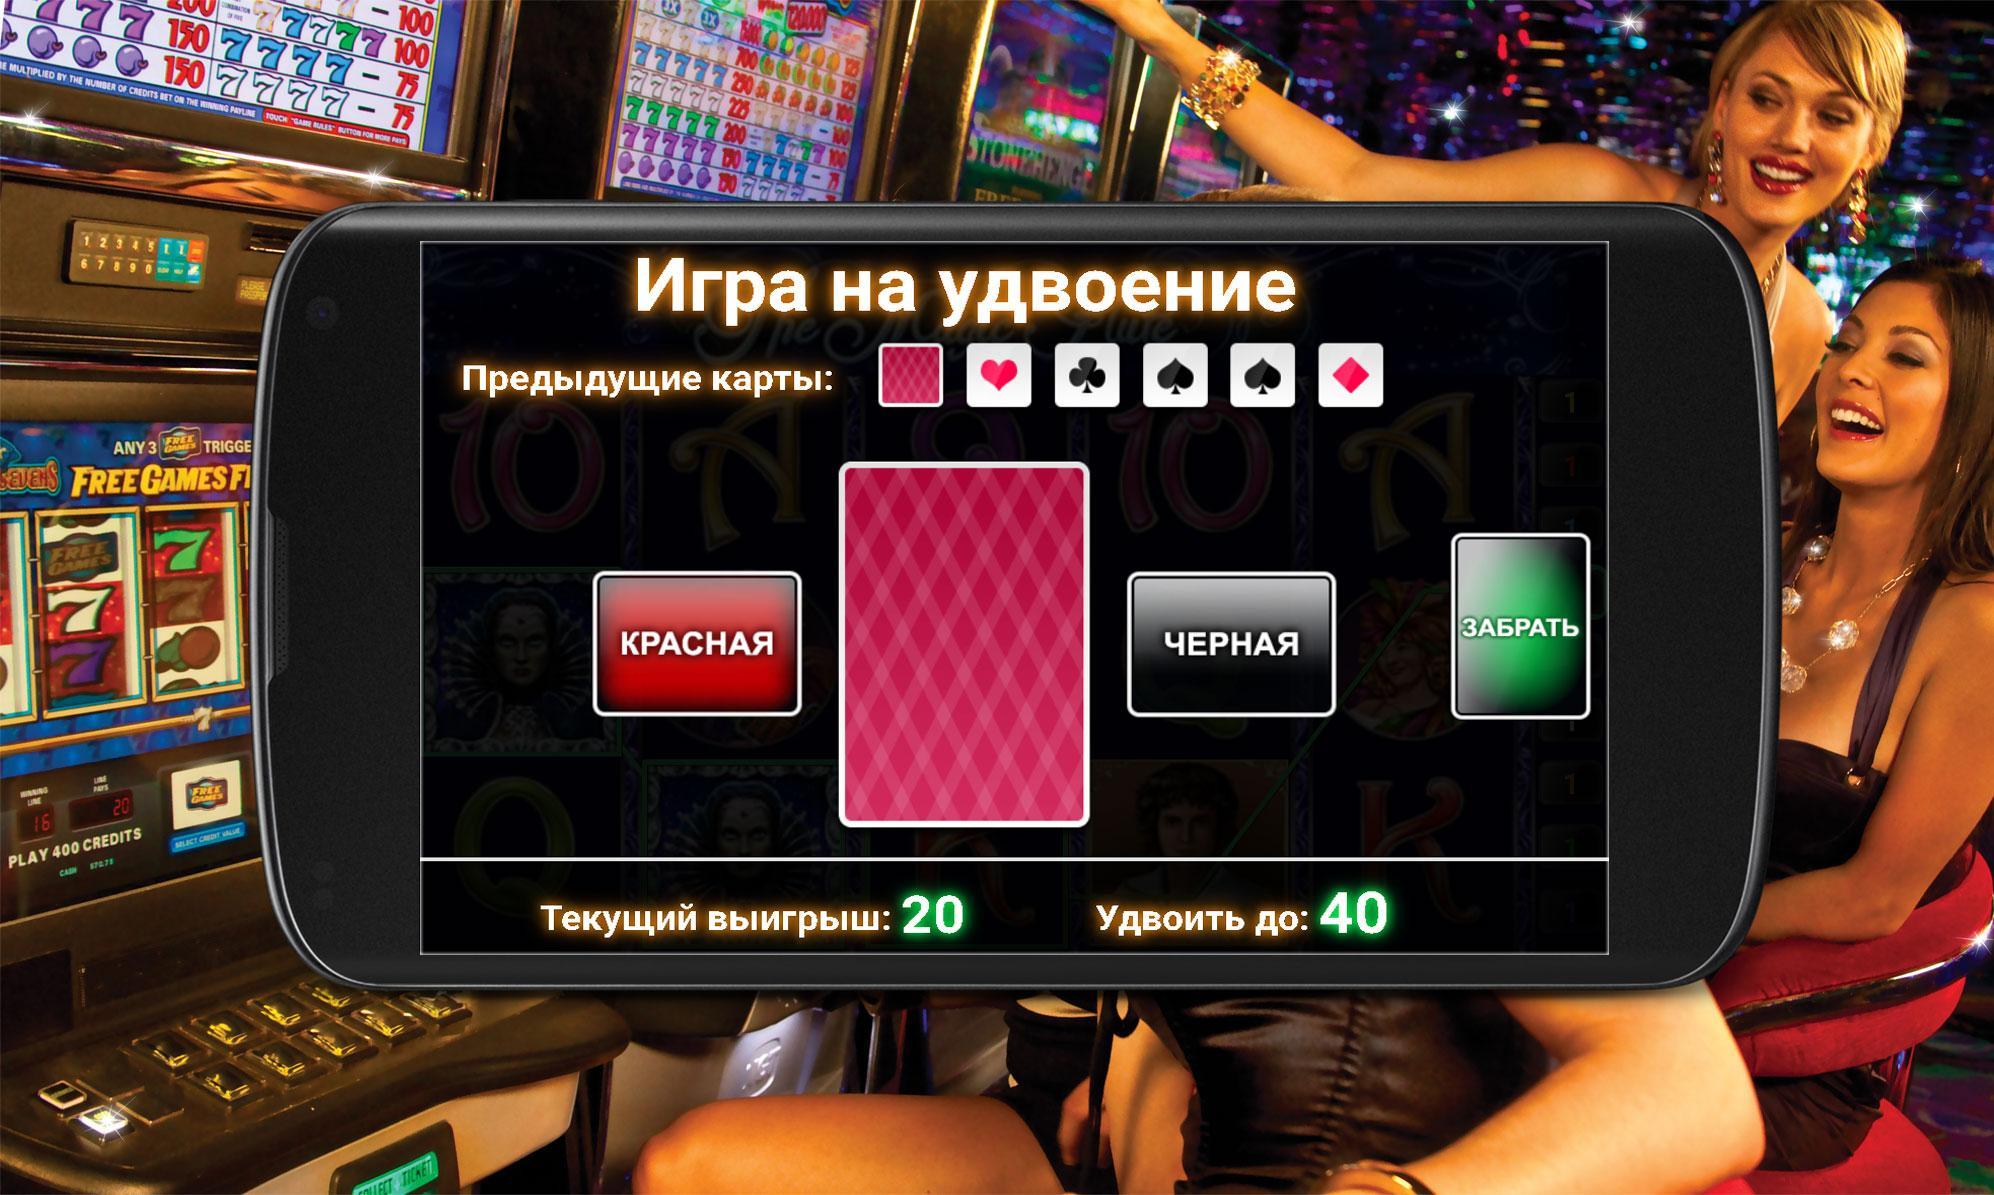 Вулкан 24 приложение на андроид. Игровые автоматы бездепозитный бонус. Автомат удачи. Самое лучшее приложение казино.